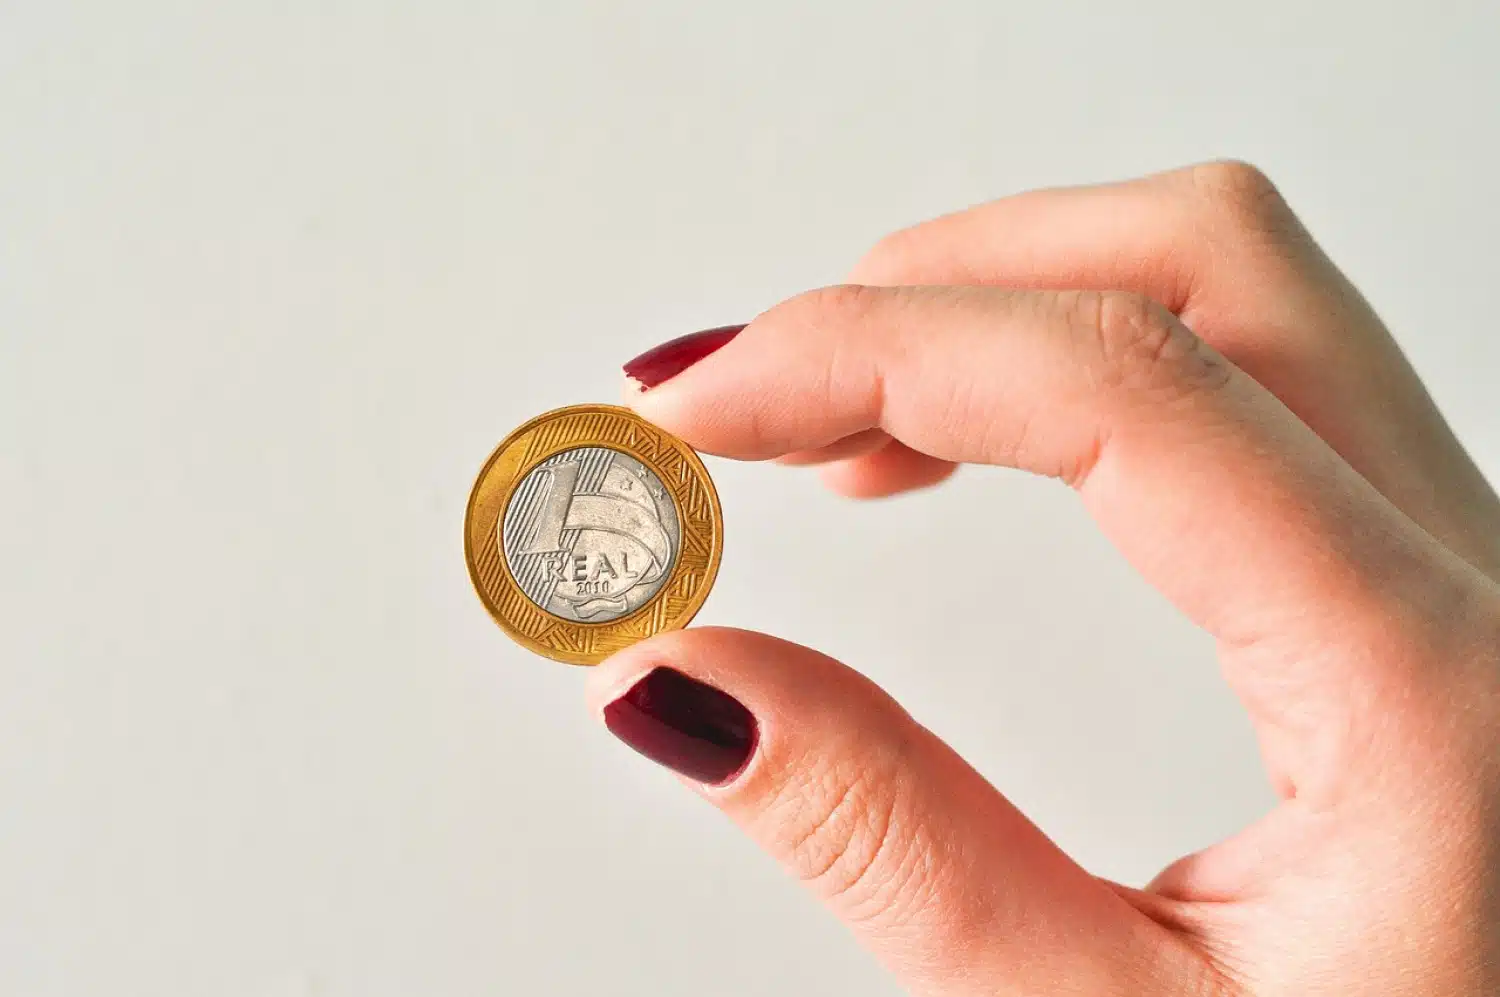  Скрити съкровища: Как да разпознаваме и продаваме редки и ценни монети от 1 реал